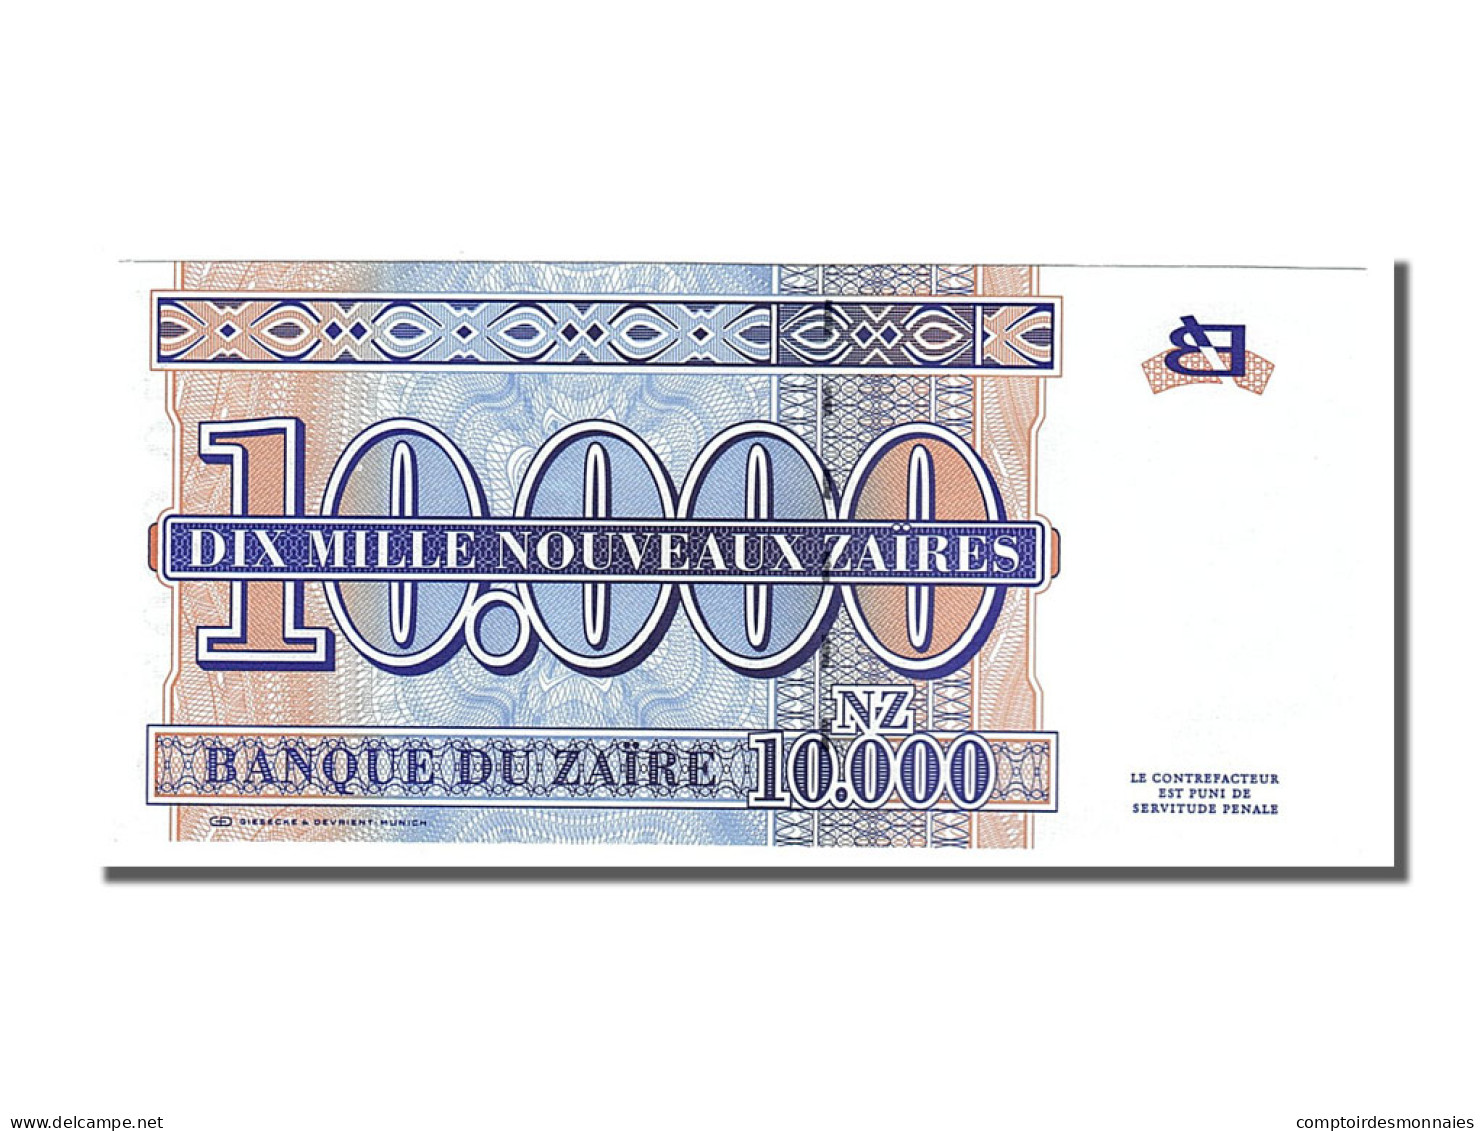 Billet, Zaïre, 10,000 Nouveaux Zaïres, 1995, 1995-01-30, NEUF - Zaire